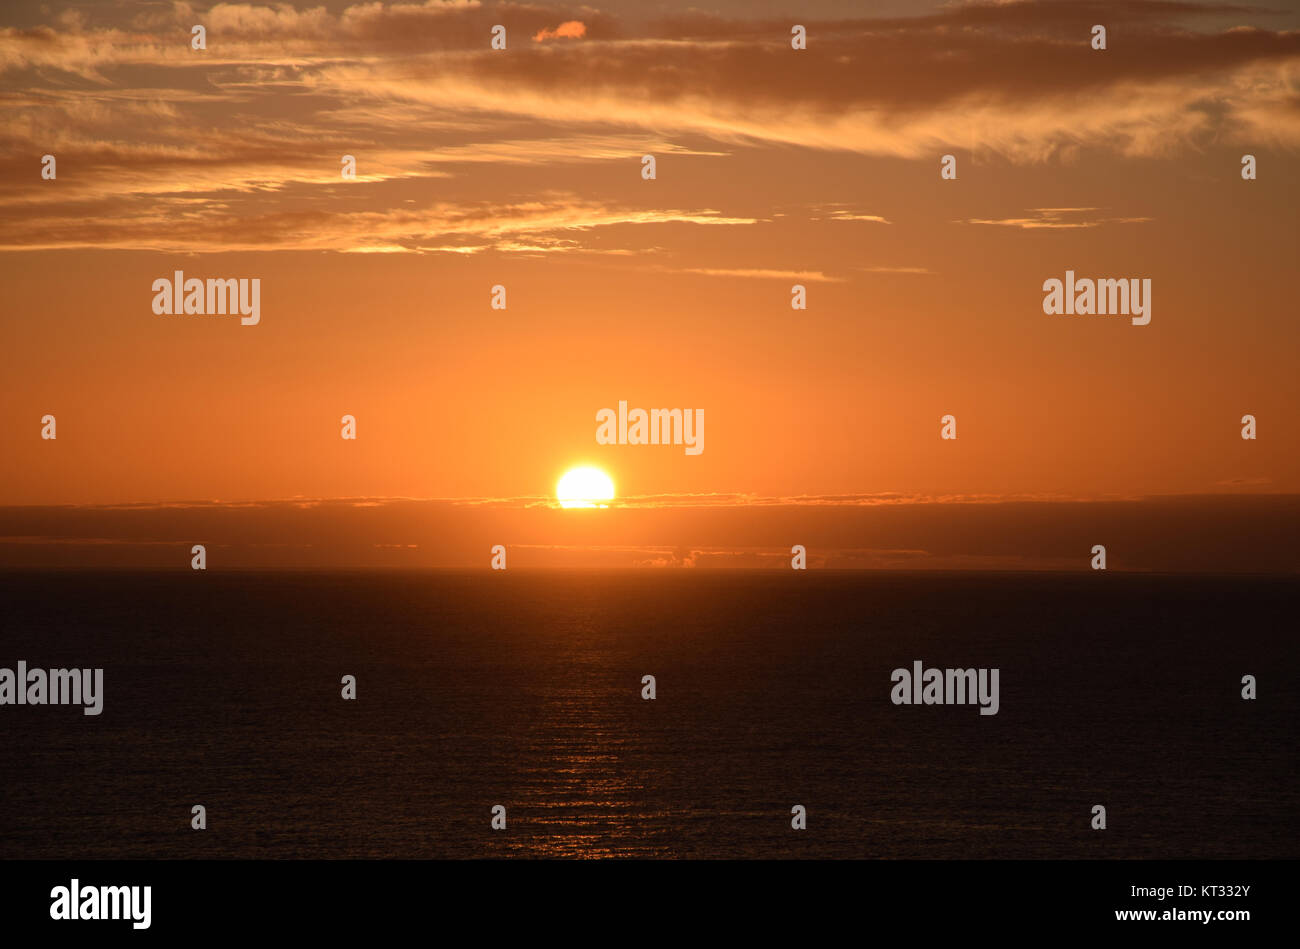 Meer, Atlantik, Küste, morgen, morgenhimmel, Sonnenaufgang, morgens, Morgensonne, Himmel, Welle, Wellen, la palma, Sonne, Stockfoto